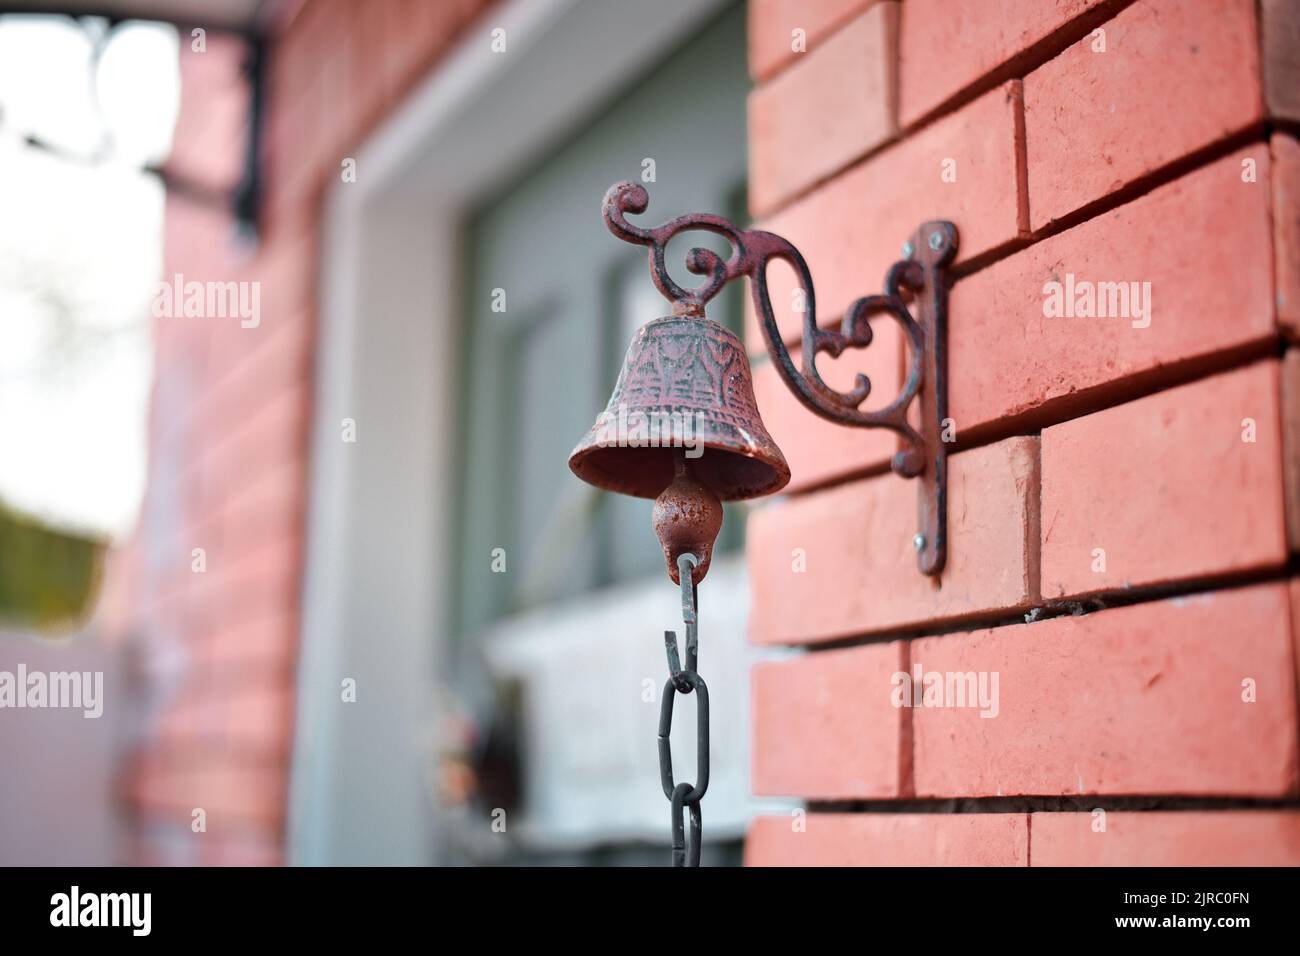 Eine Nahaufnahme einer metallischen Glocke, die an einer Steinwand befestigt ist Stockfoto